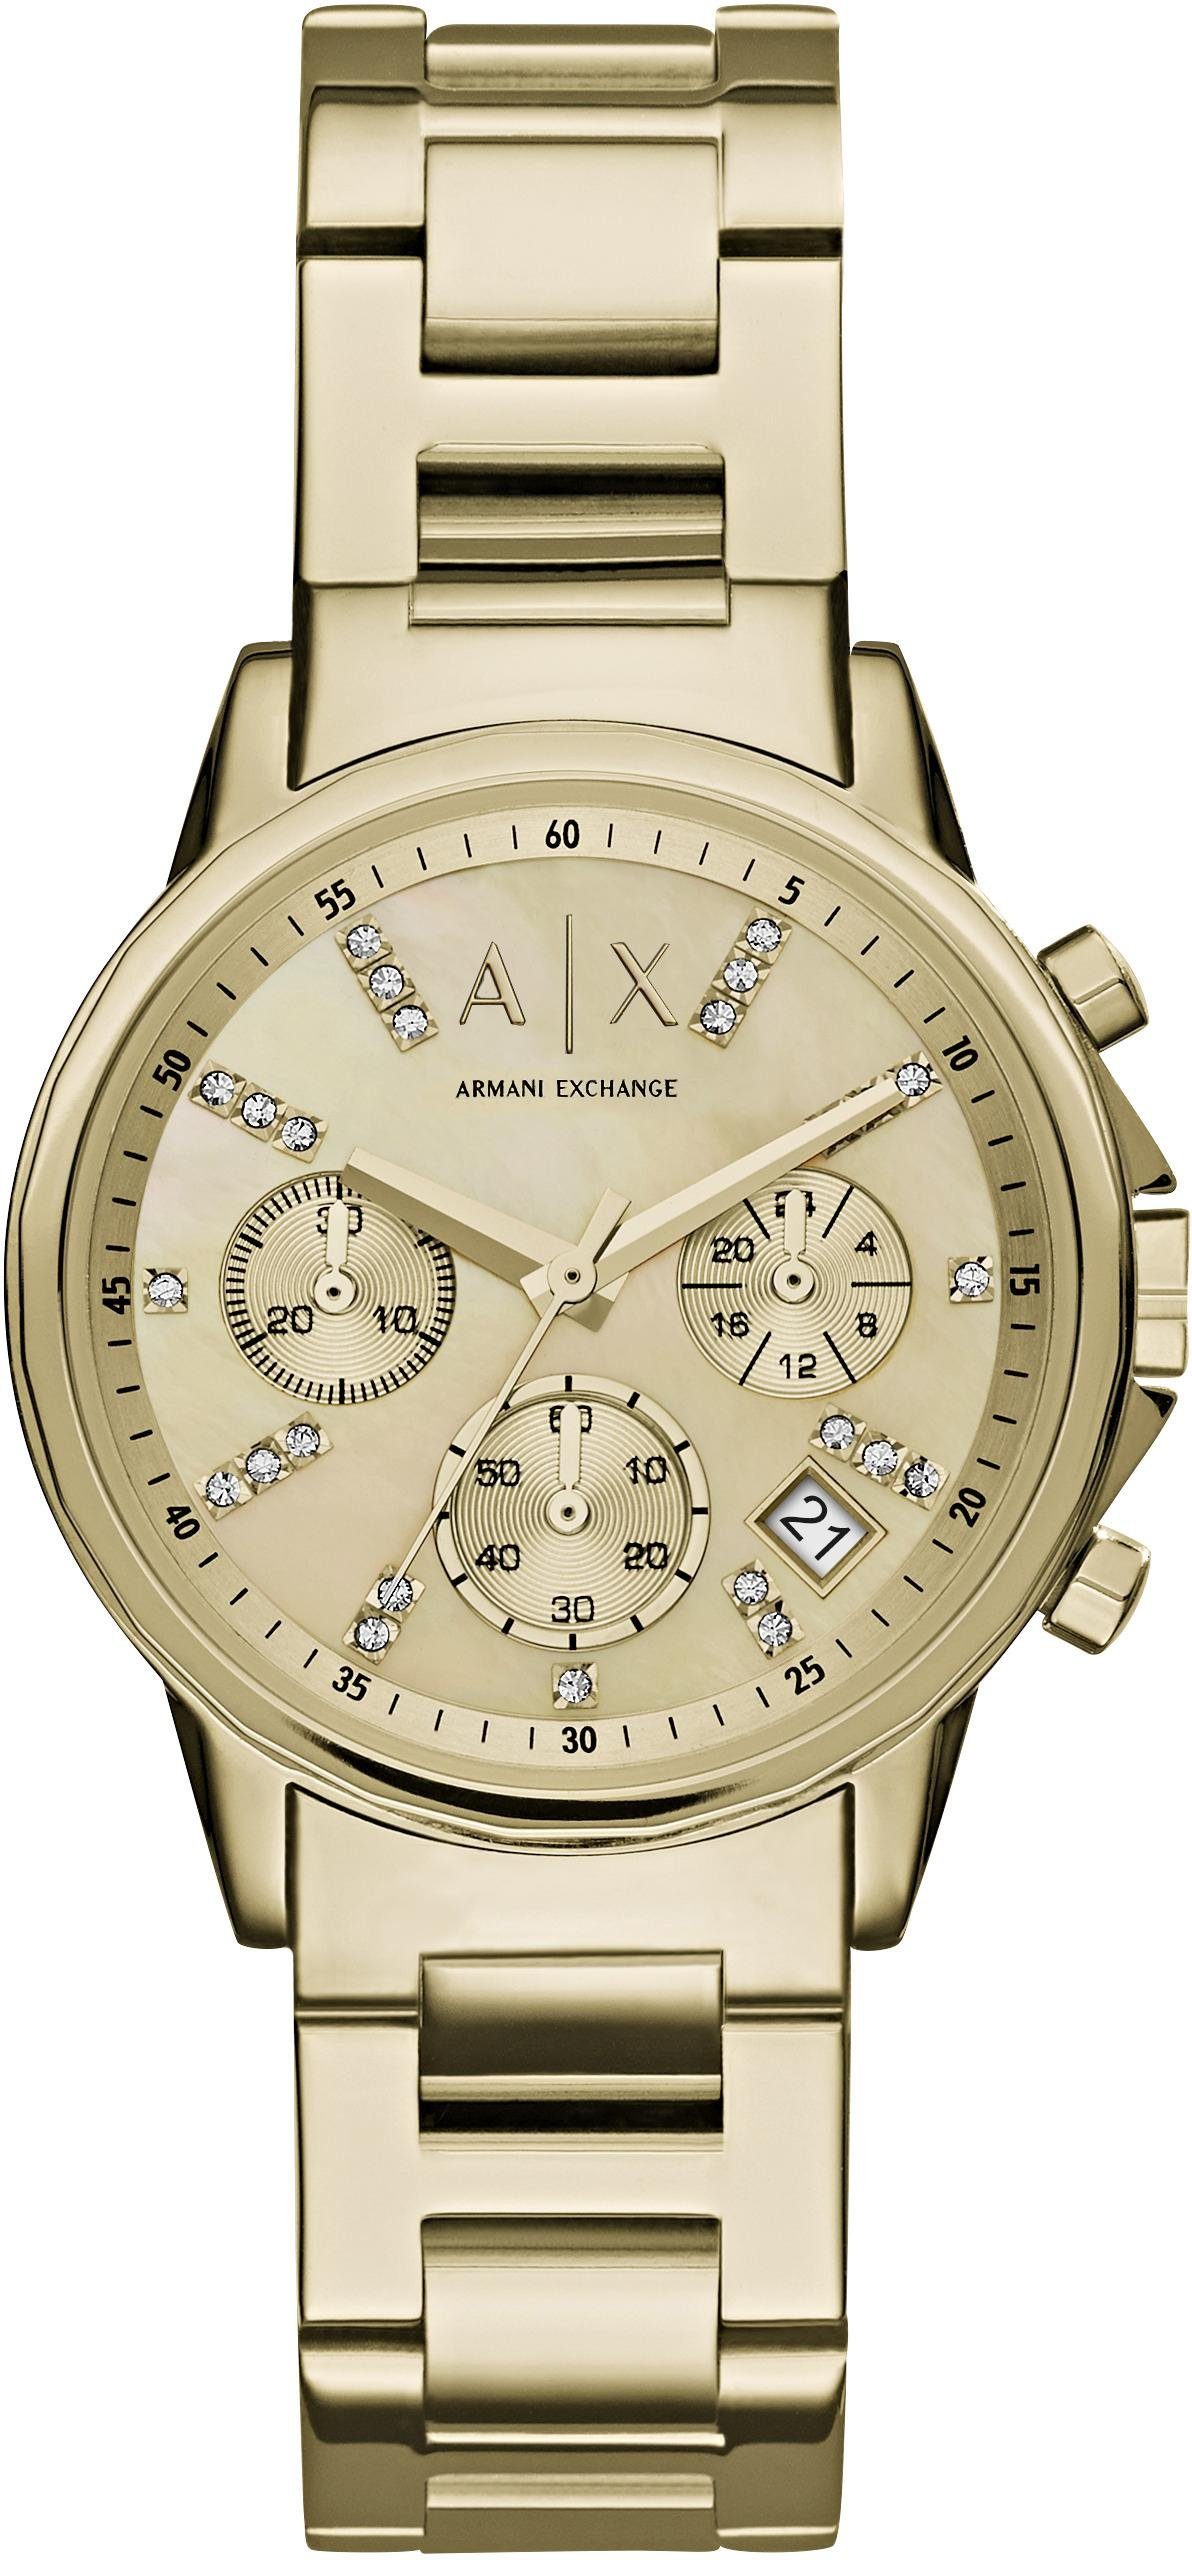 ARMANI EXCHANGE Chronograph AX4327, Quarzuhr, Armbanduhr, Damenuhr, Stoppfunktion, 12/24-Std.-Anzeige